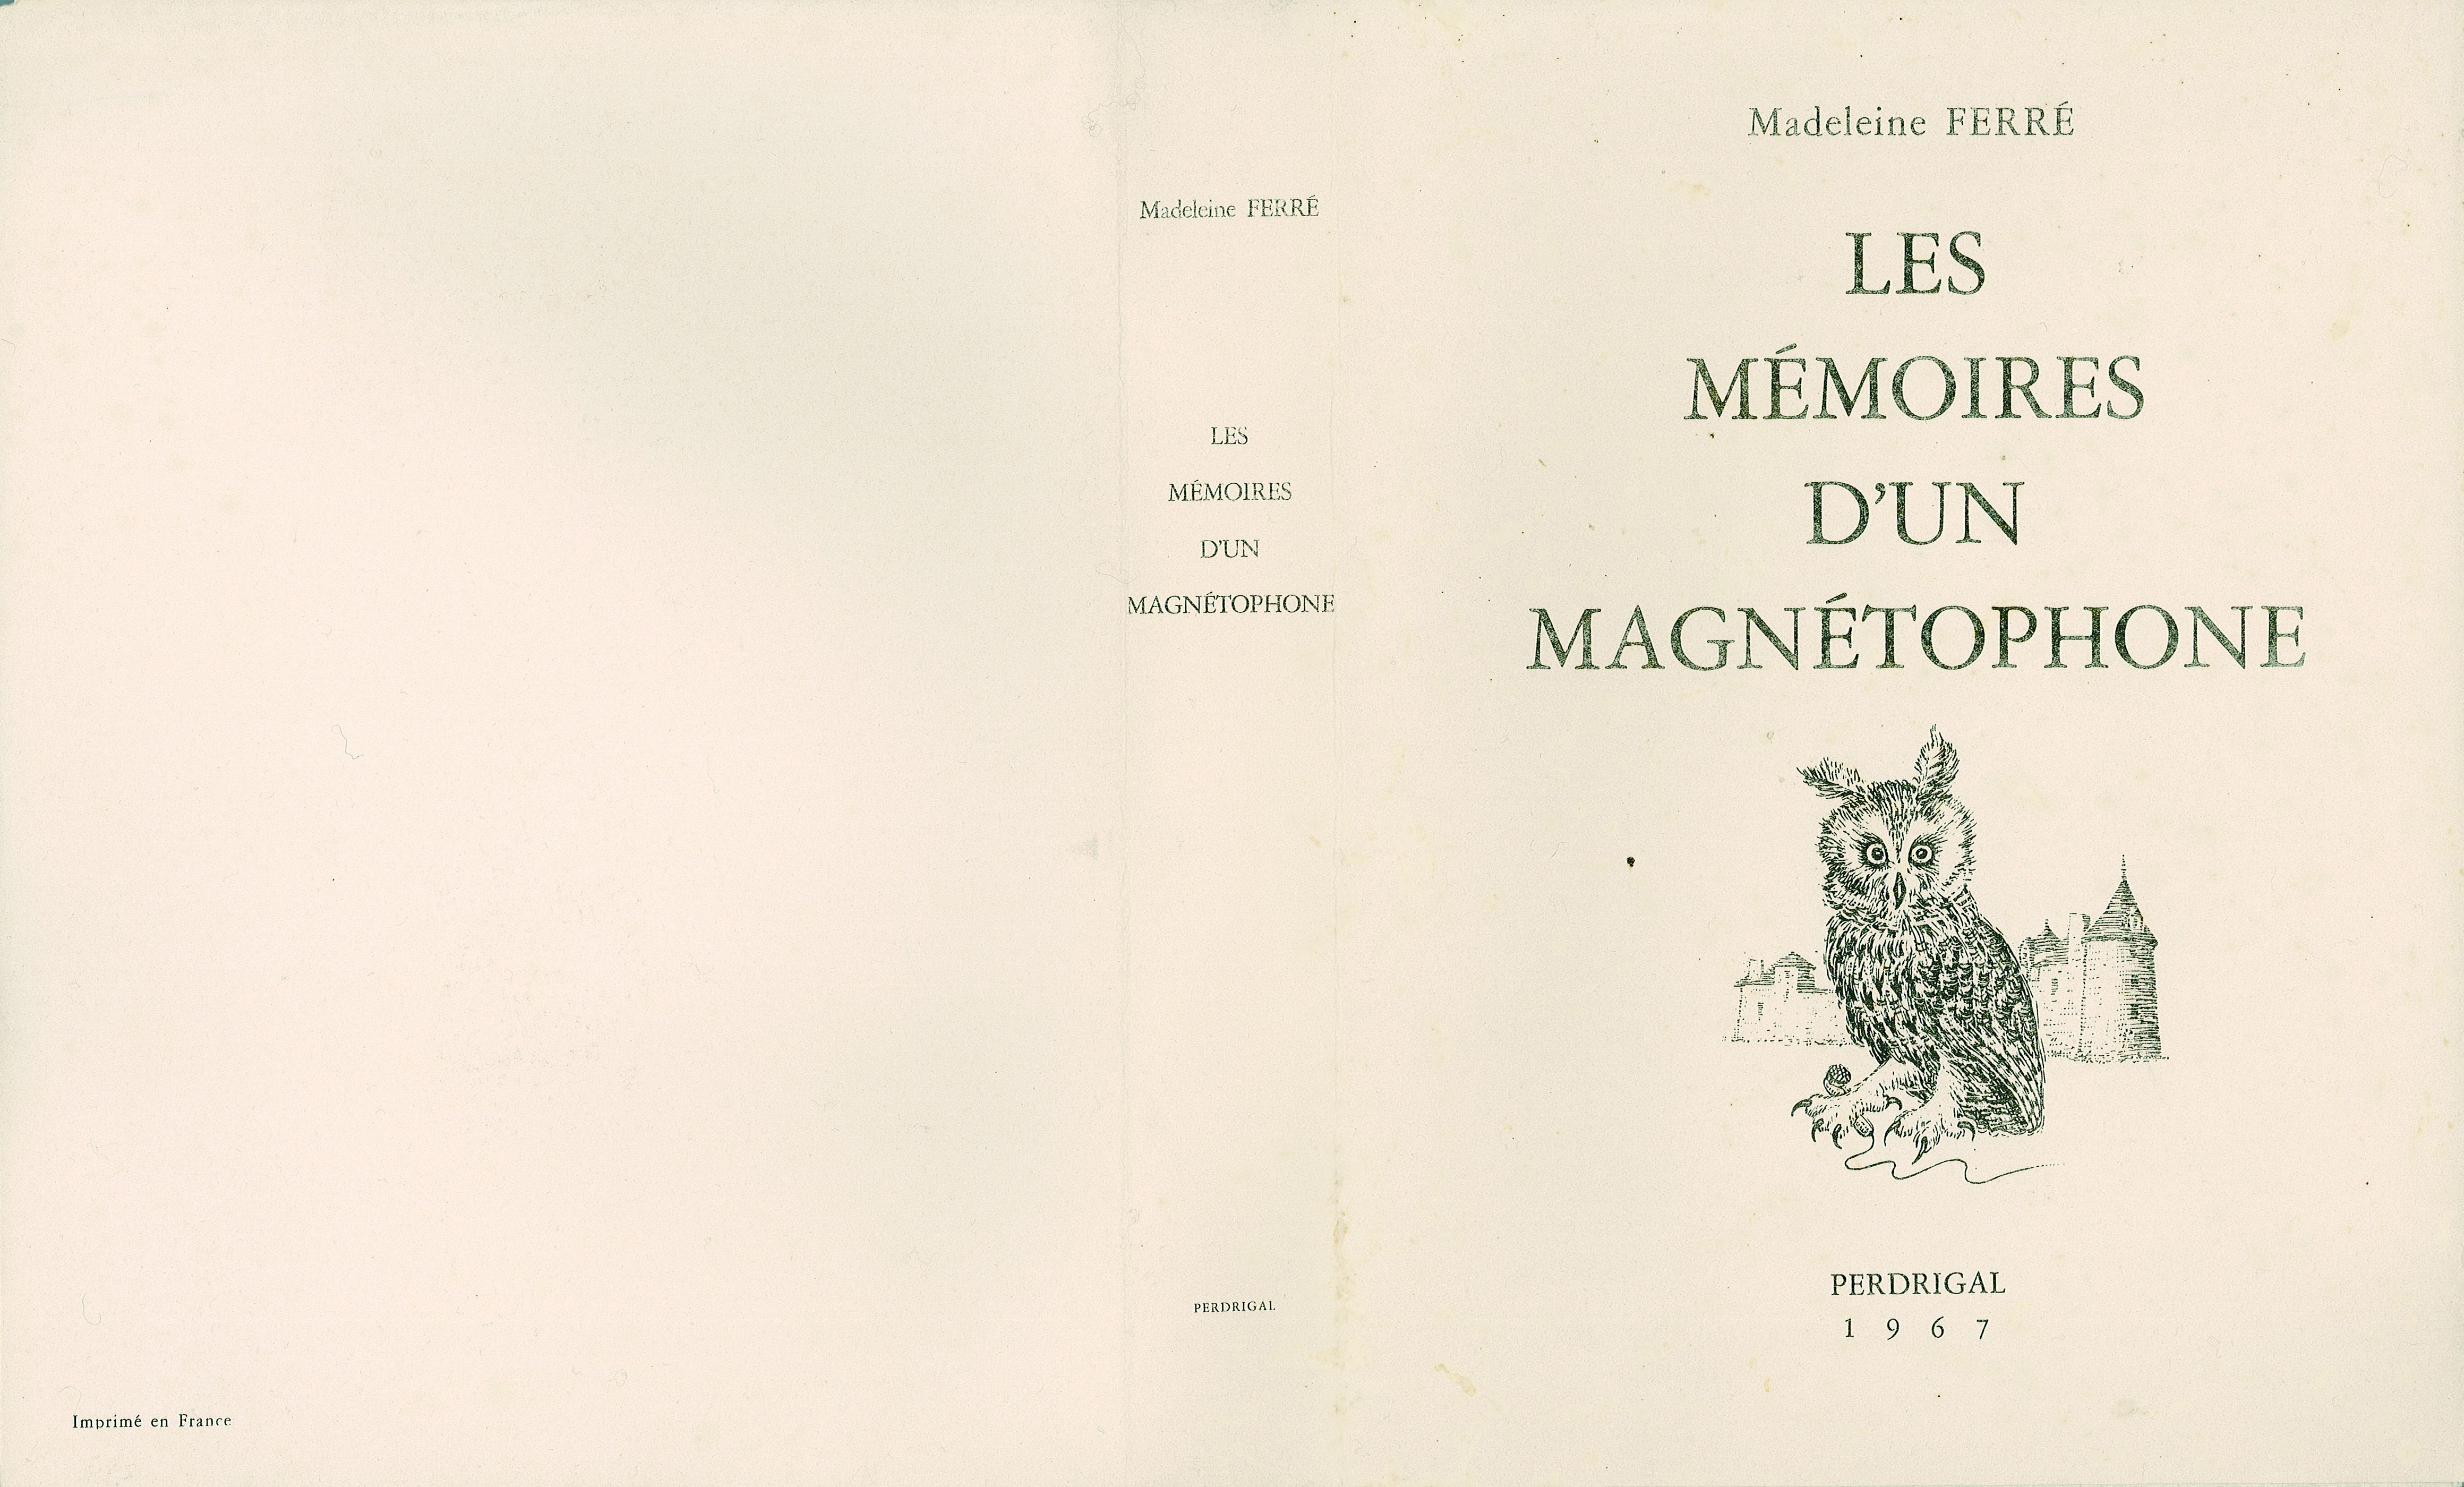 Impression par Léo Ferré du livre Les Mémoires d'un magnétophone de Madeleine Ferré